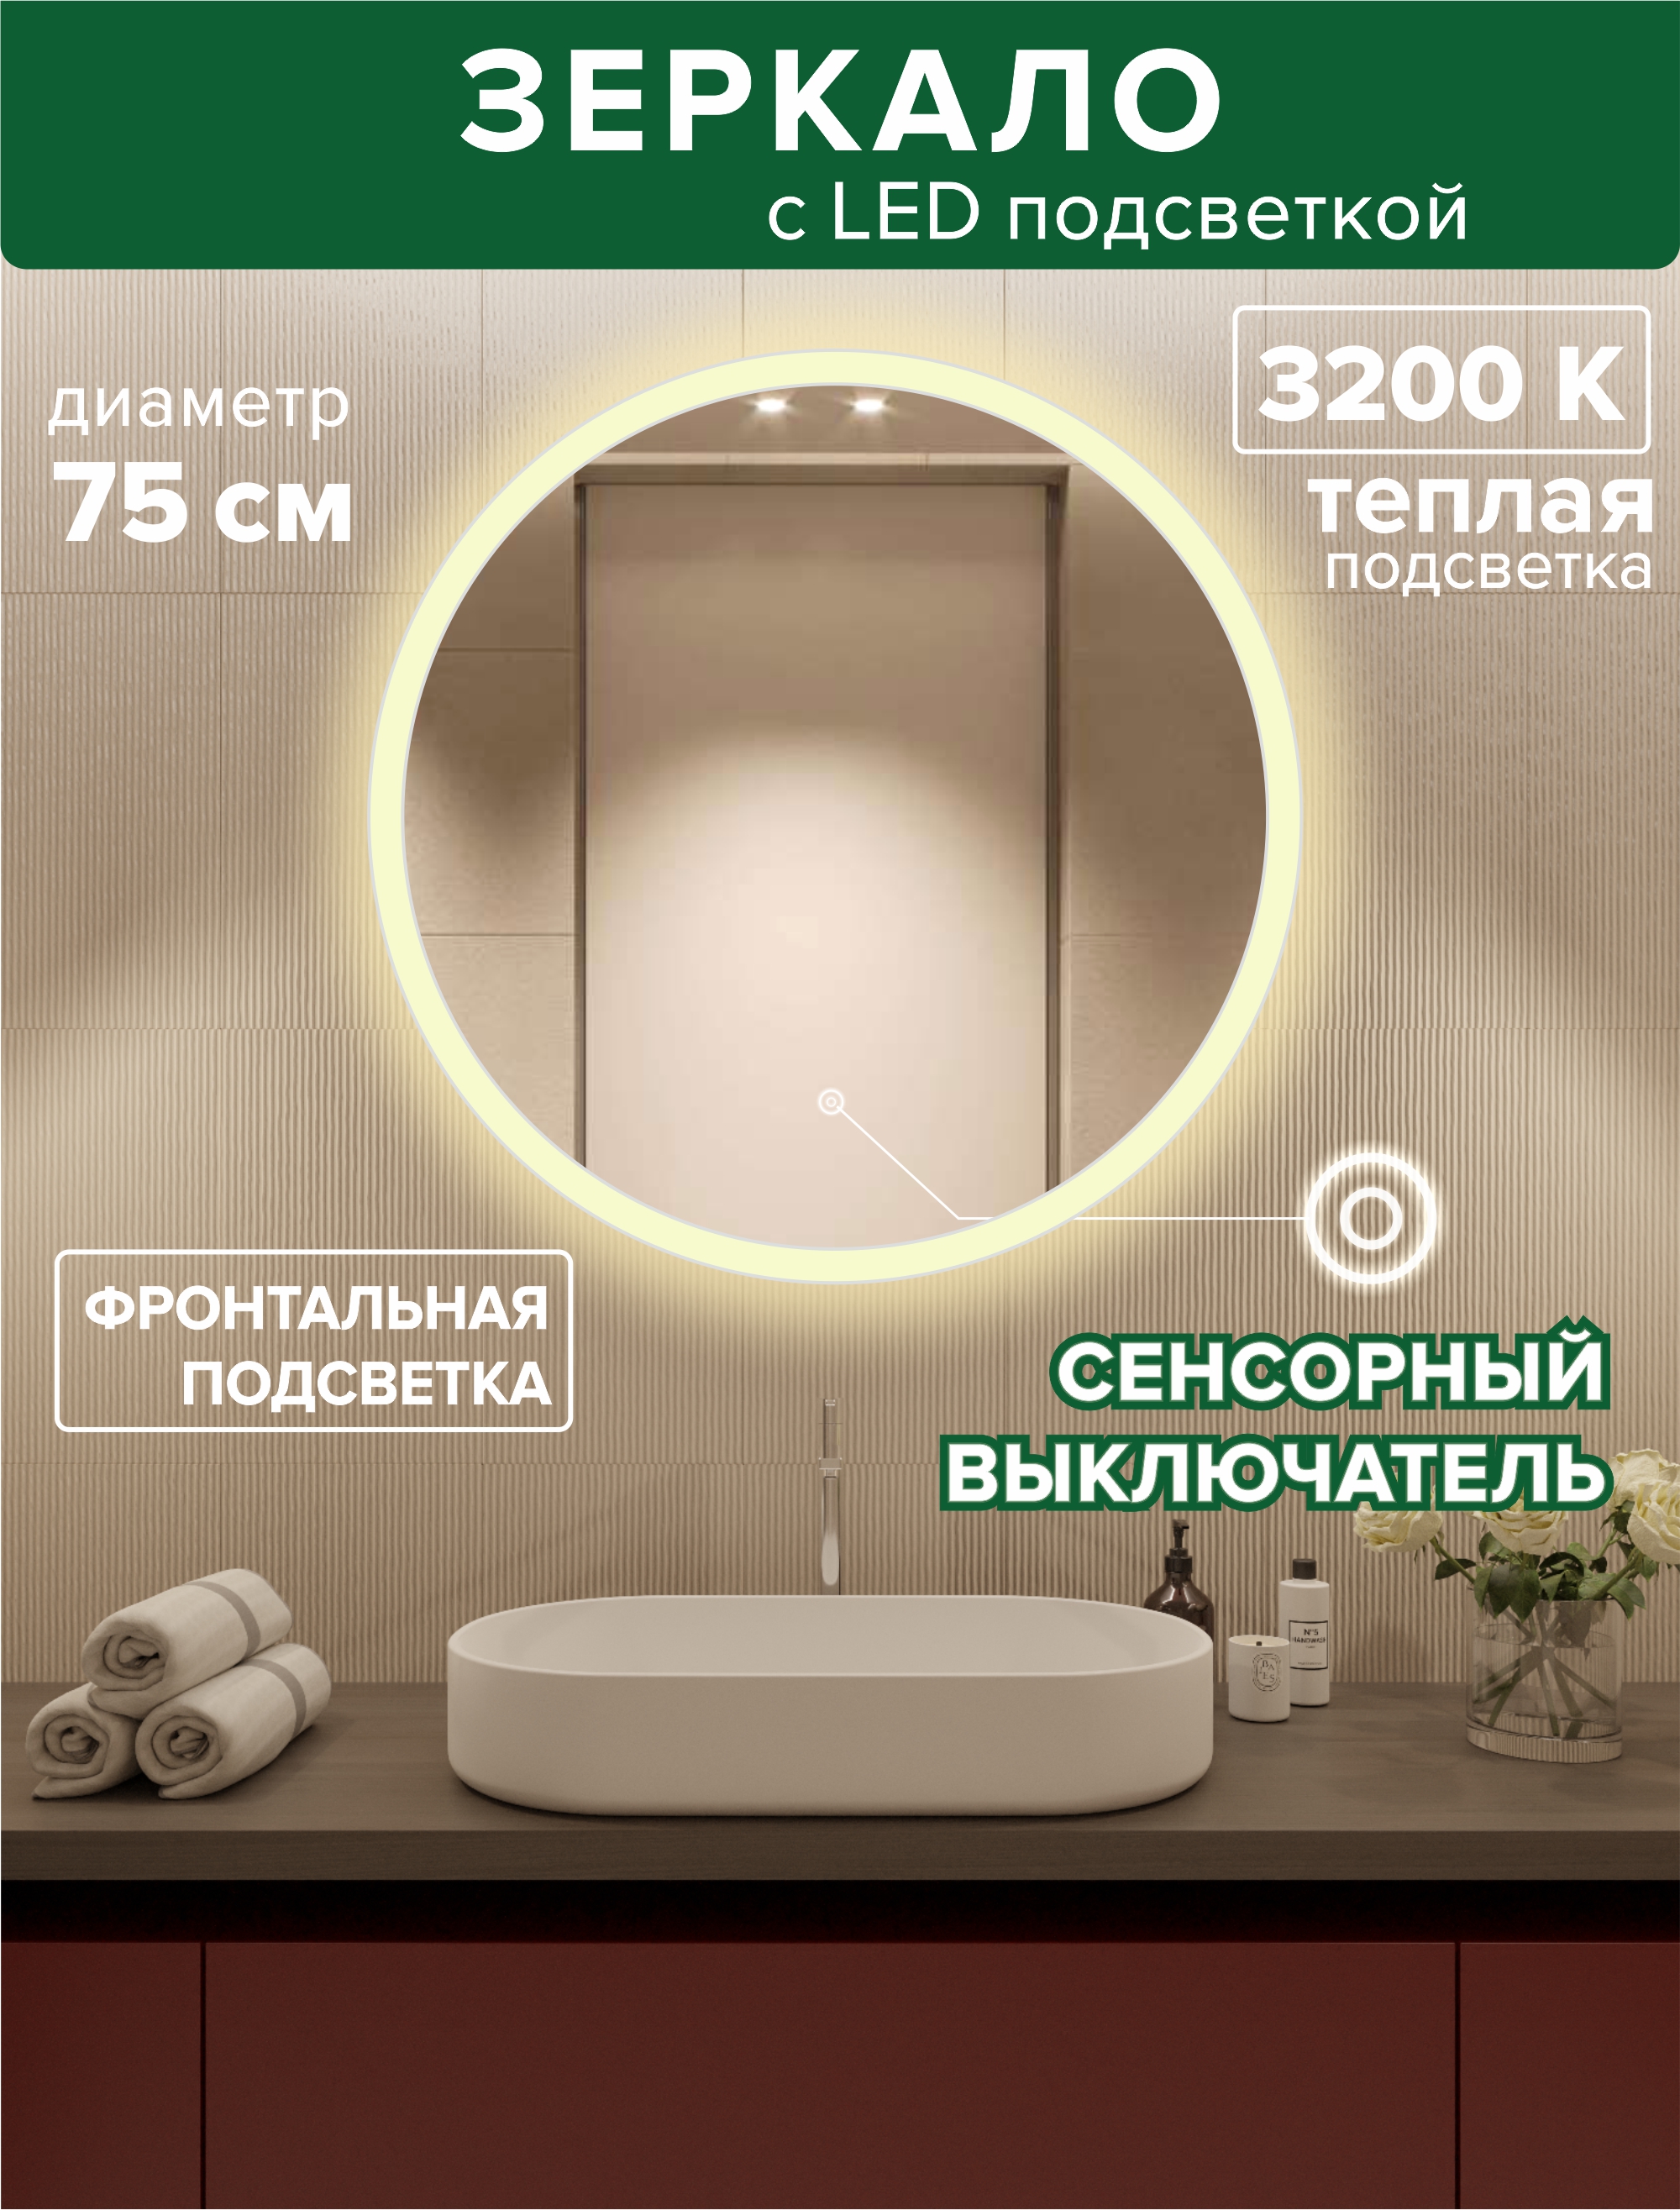 Зеркало для ванной Alfa Mirrors фронтальная теплая подсветка 3200К, круглое 75см,MSvet-75t светодиодная гирлянда rich led 10 м 100 led 24в соединяемая влагозащитный колпачок теплая белая прозрачный провод rl s10c 24v ct ww